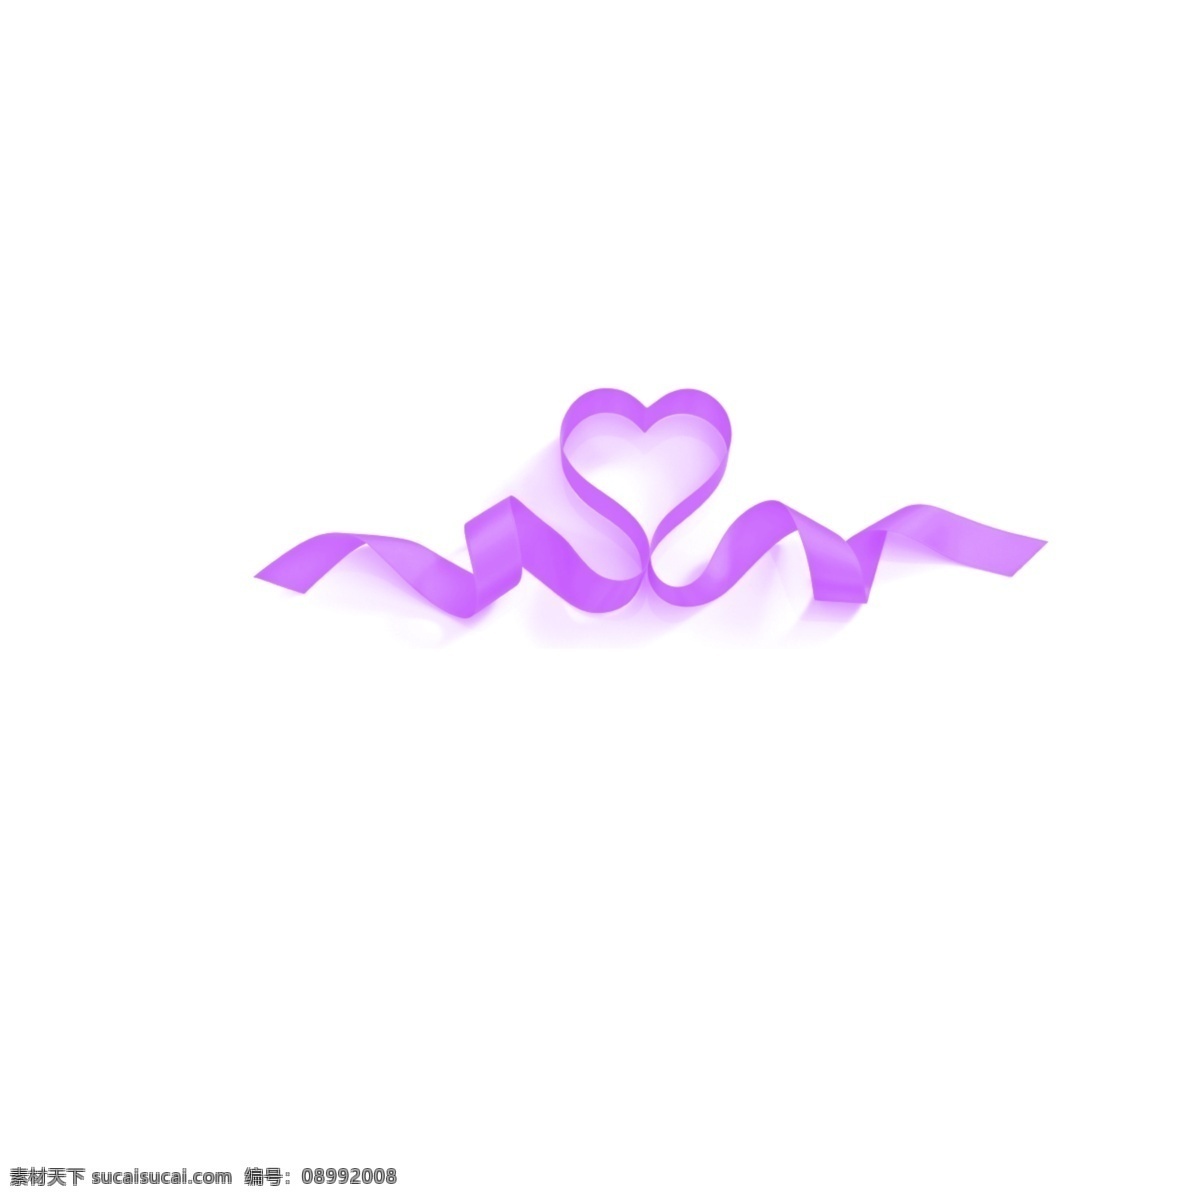 卡通 彩带 免 抠 卡通彩带 年中庆典 彩带设计 漂浮彩带 节日 装饰 紫色的彩带 飘逸的彩带 爱心